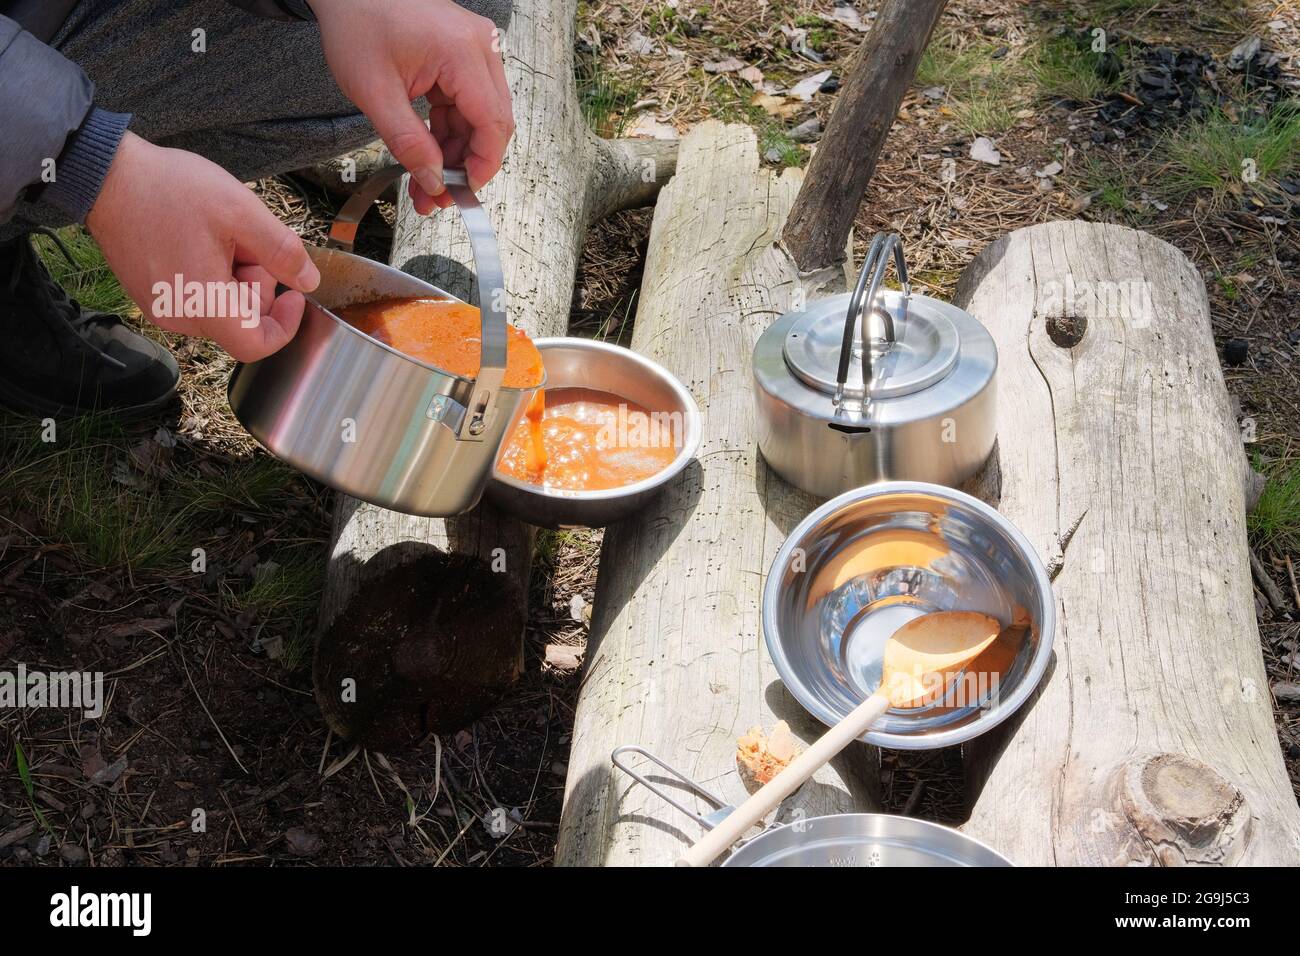 Touristische Küche bei Aktivitäten im Freien. Suppe in Schüsseln auf Holzstämmen im Wald. Camping Lebensmittelherstellung. Stockfoto